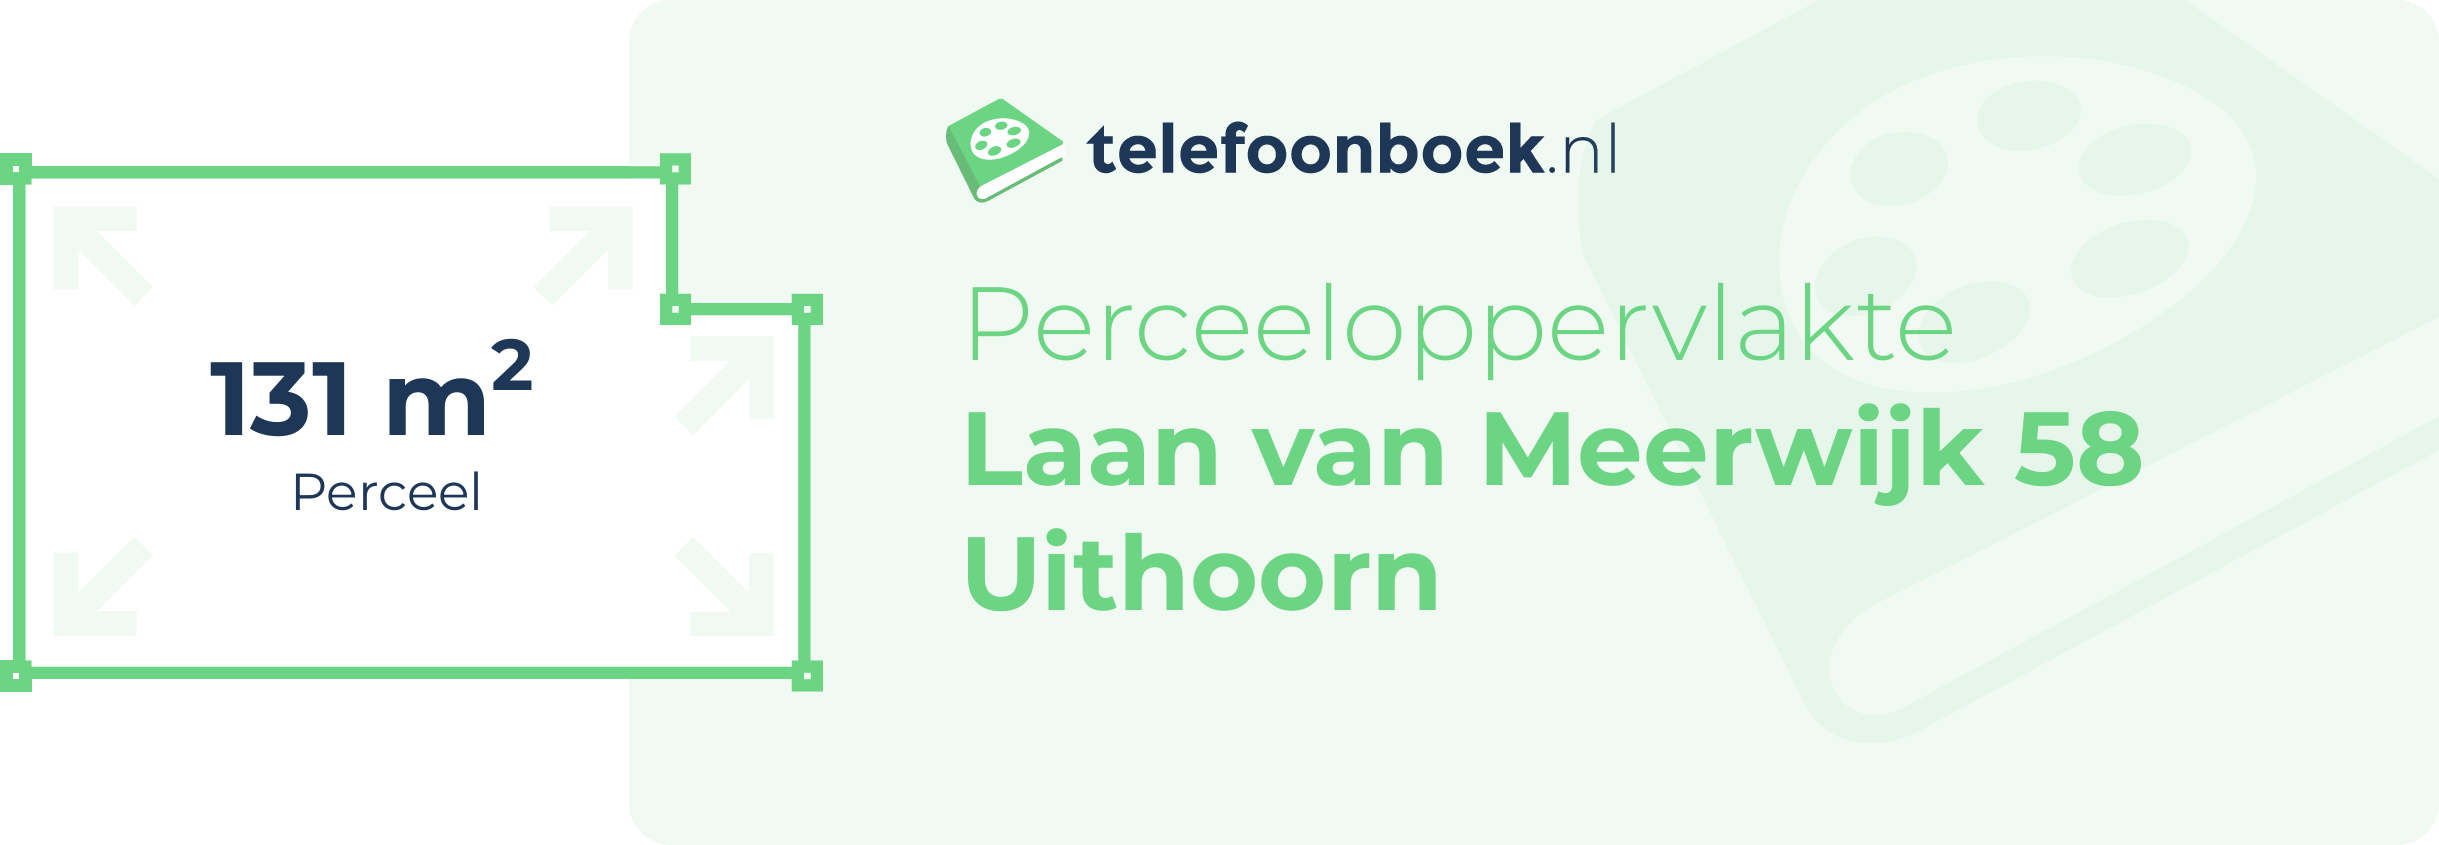 Perceeloppervlakte Laan Van Meerwijk 58 Uithoorn